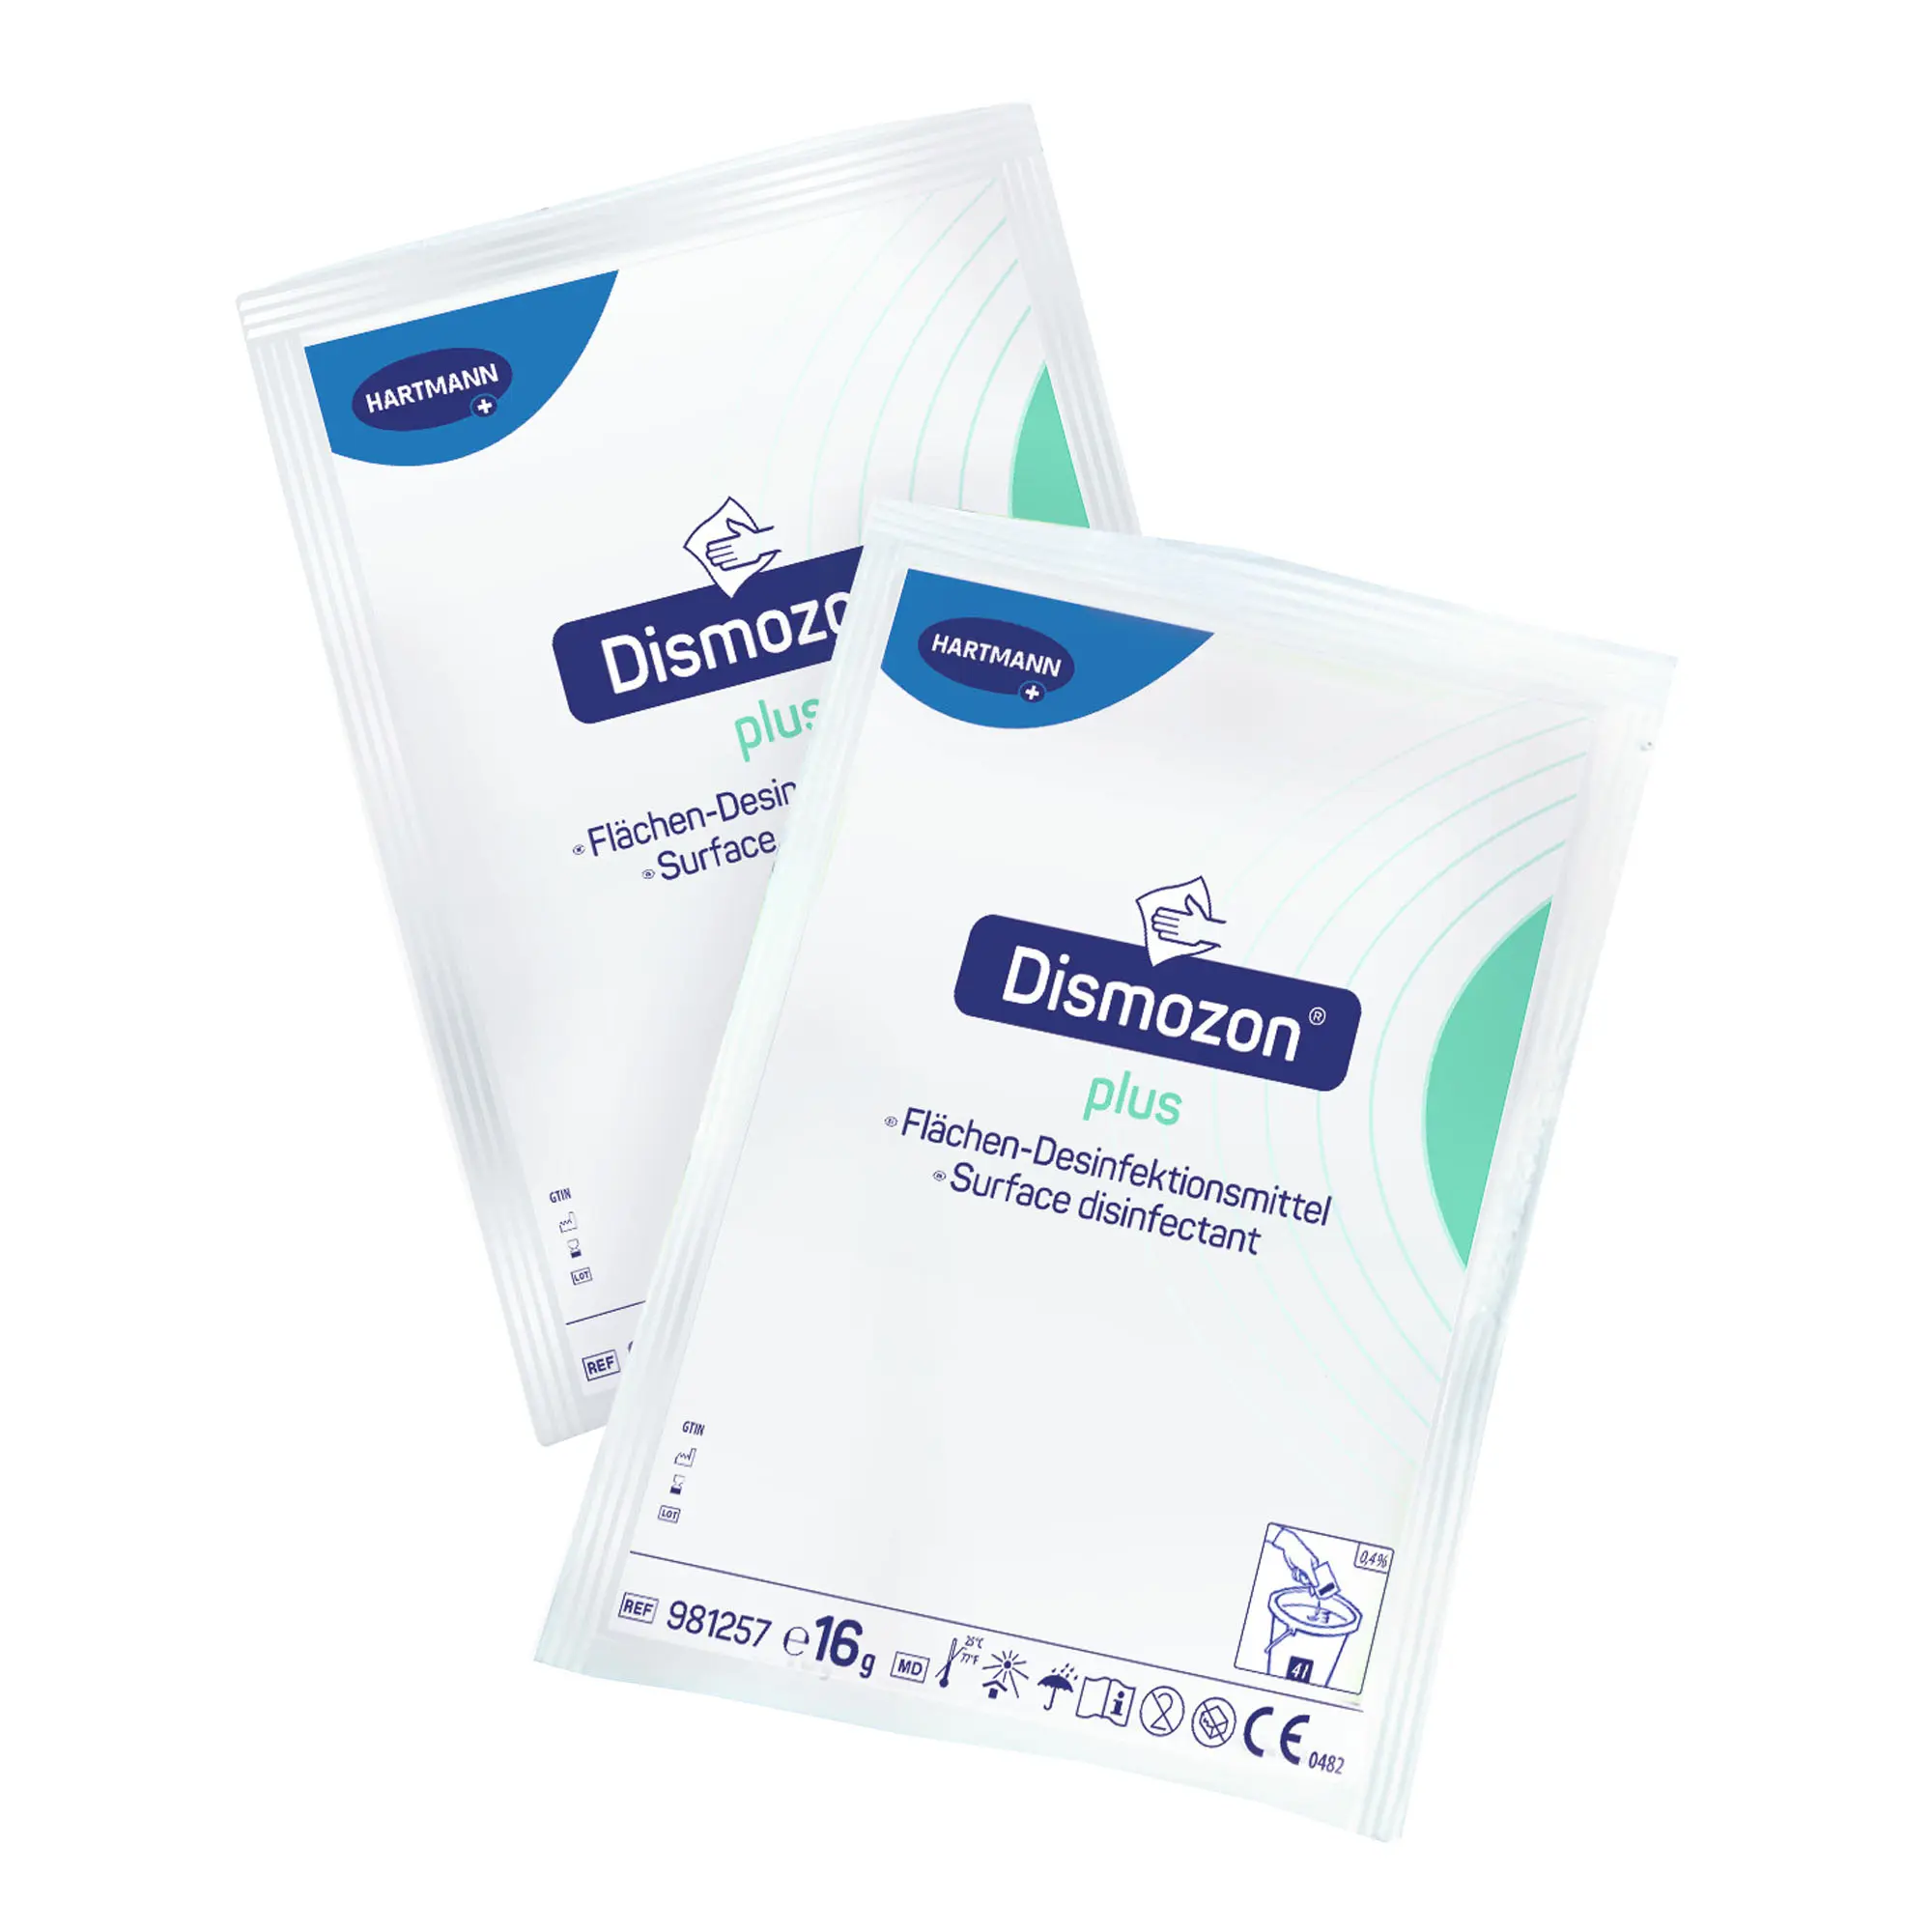 Bode Dismozon plus sauerstoffaktives Granulat zur Desinfektionsreinigung